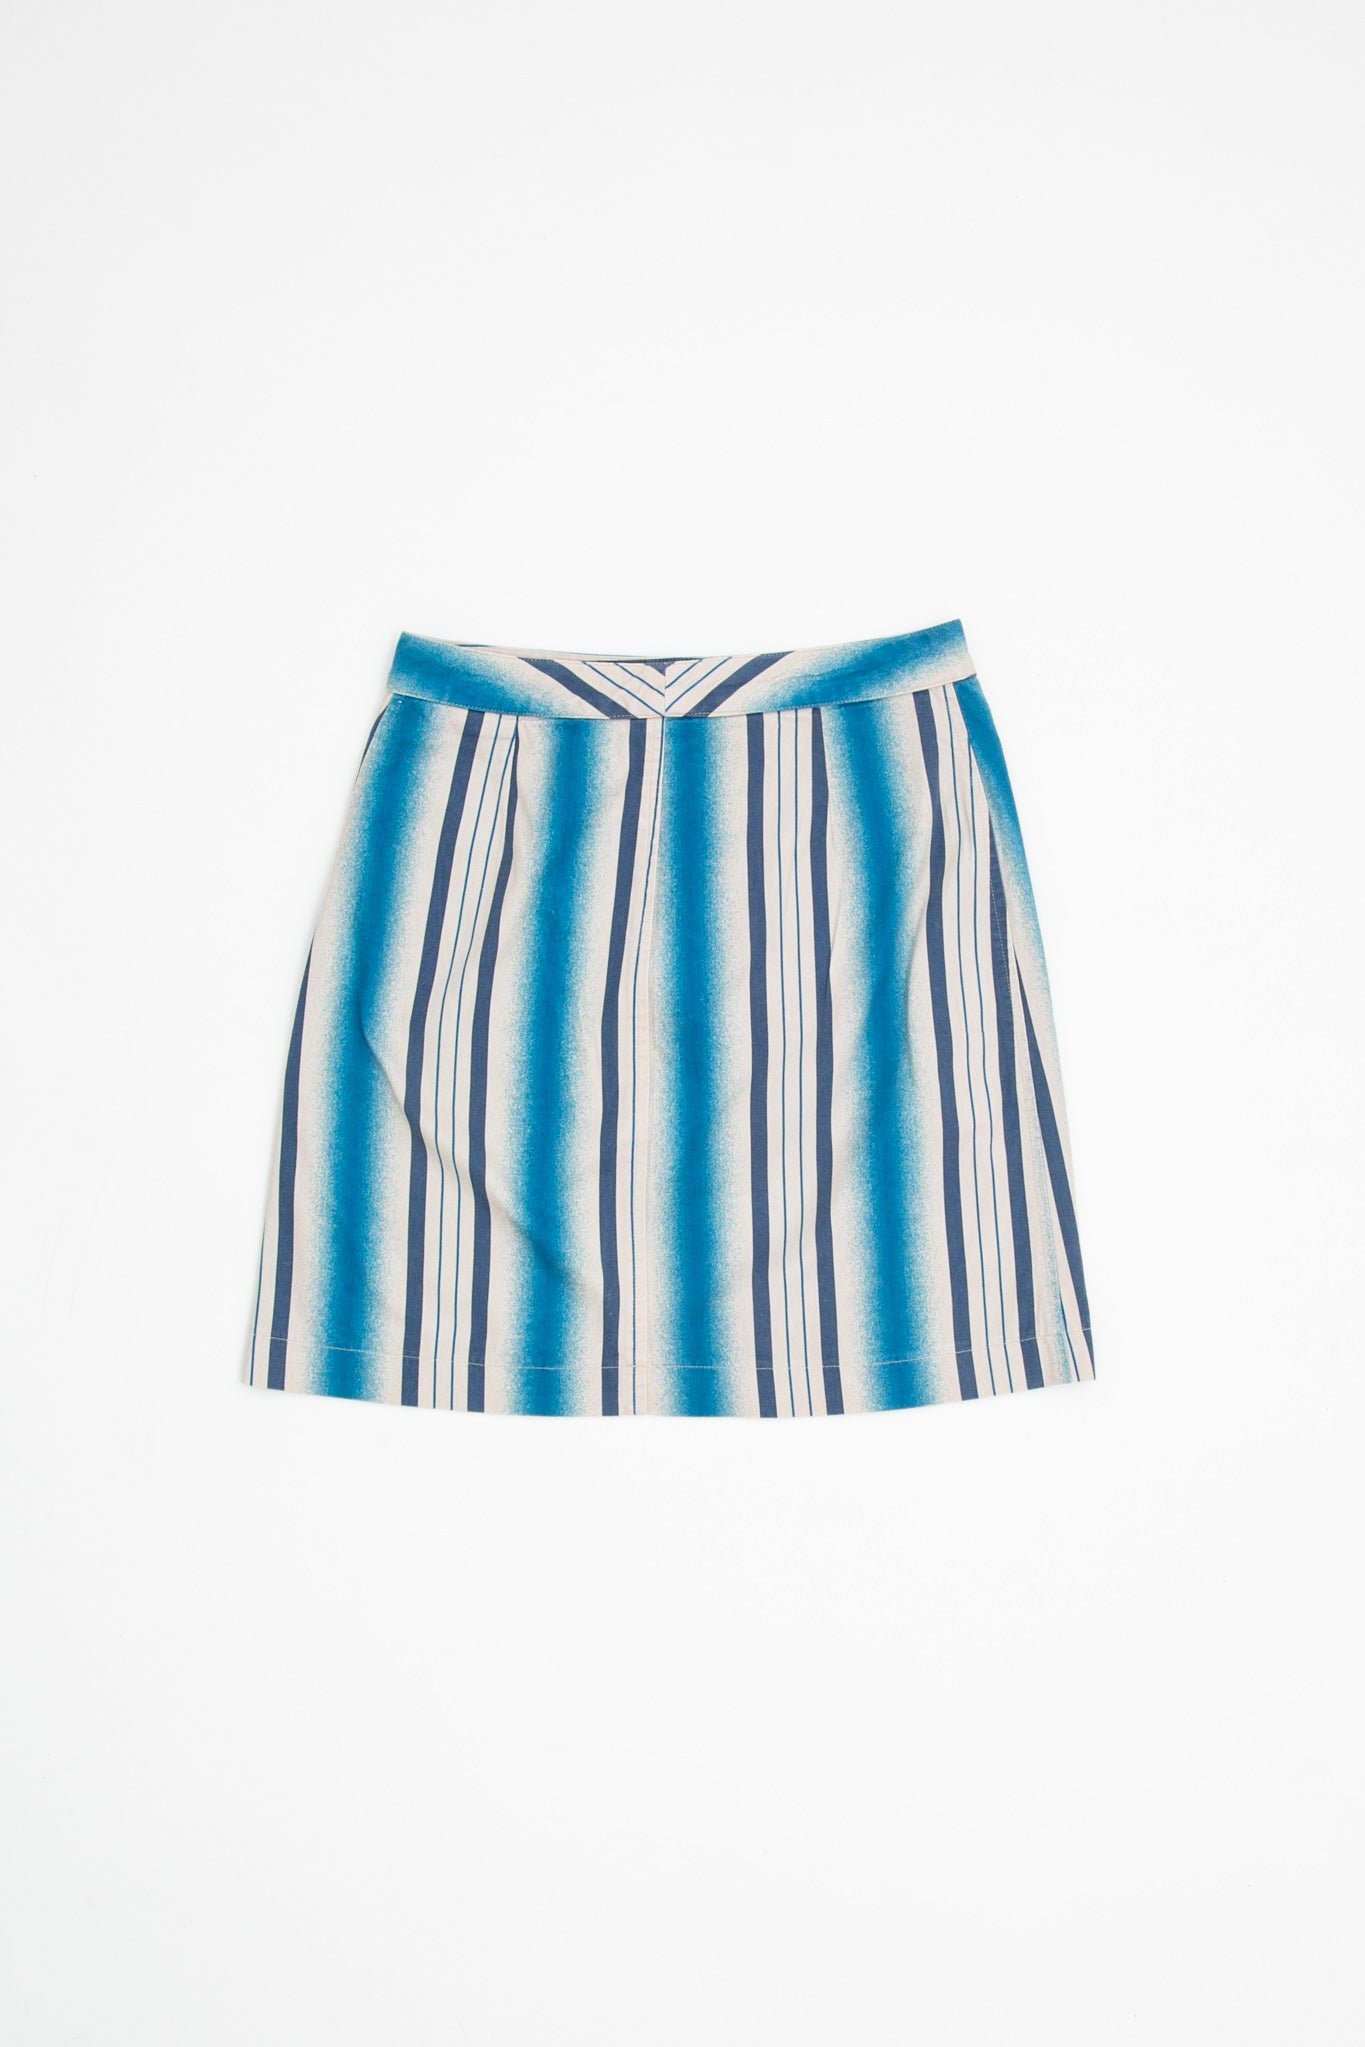 Dolce & Gabanna Striped Skirt